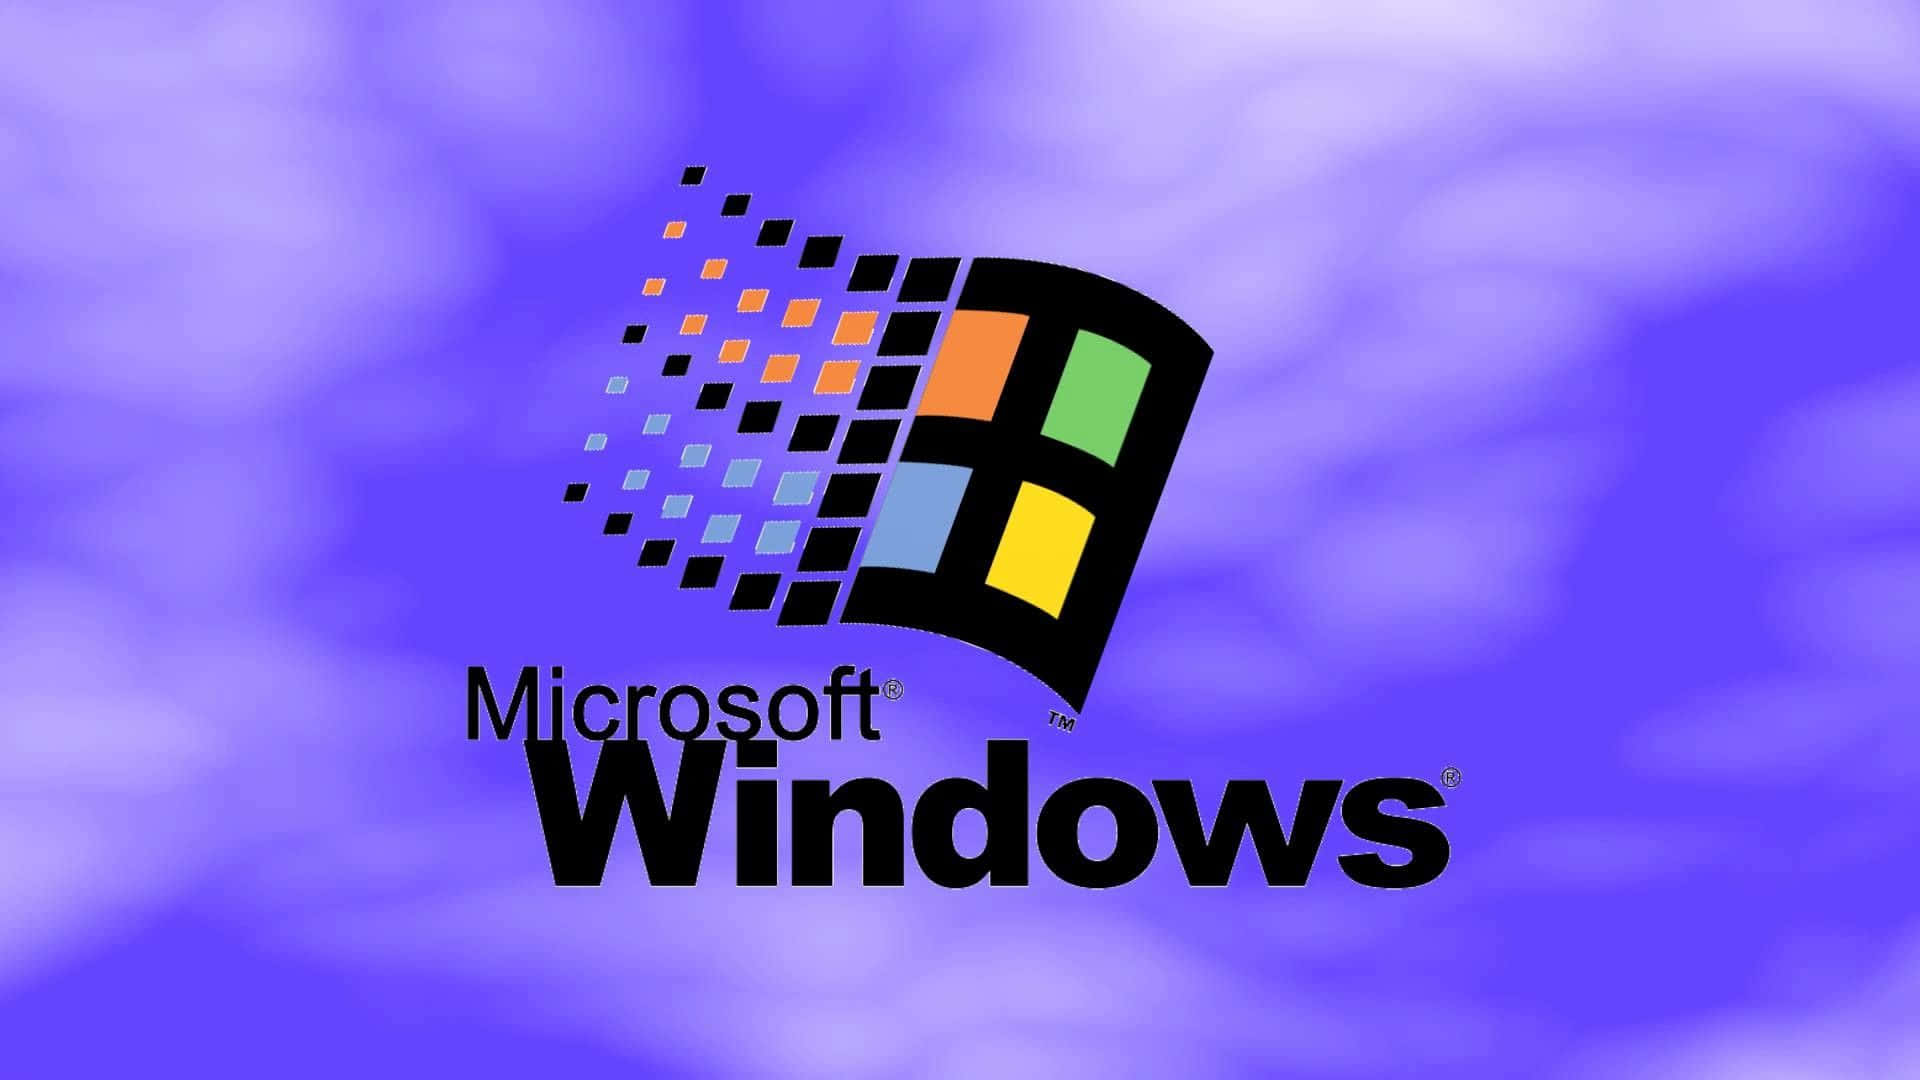 Logotipode Microsoft Windows Sobre Un Fondo Azul